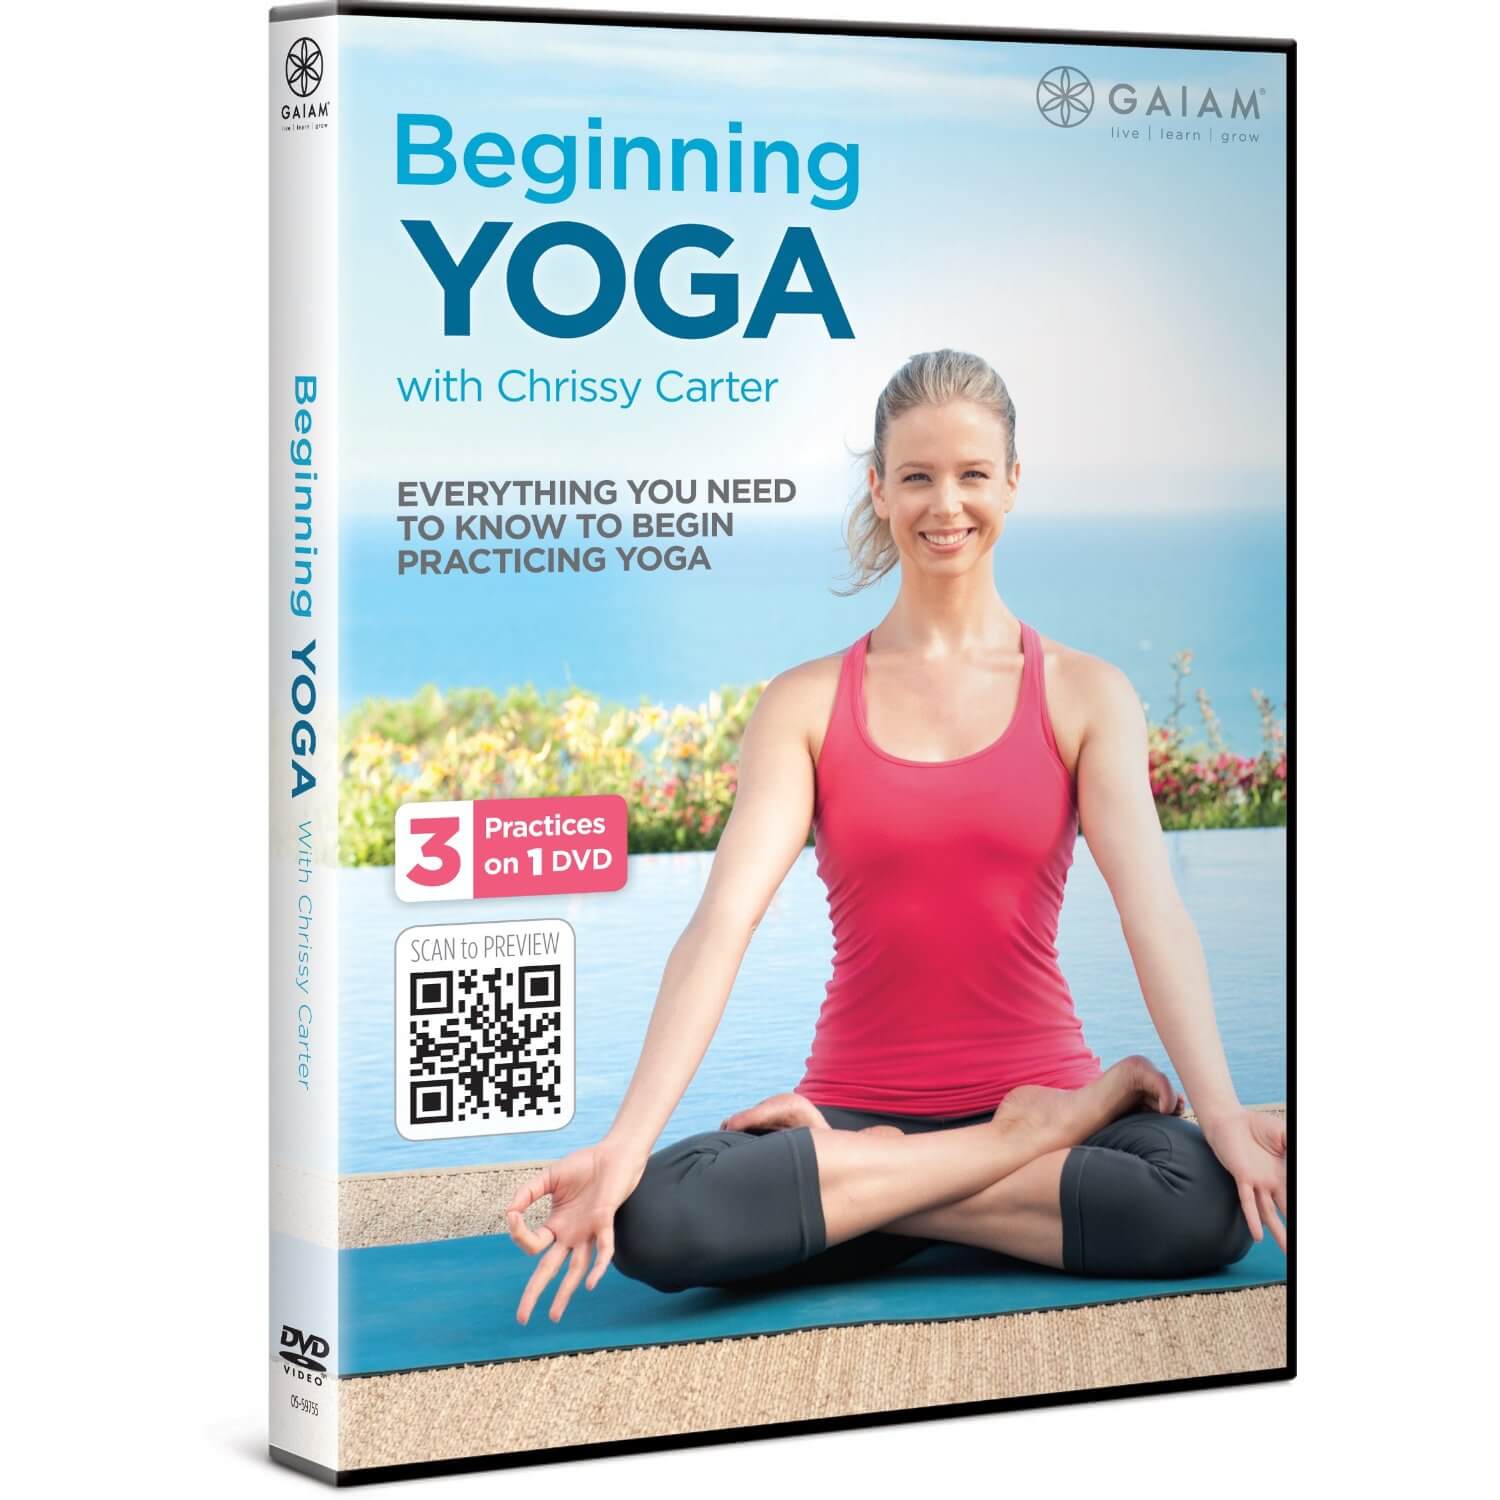 https://chrissycarter.com/wp-content/uploads/2017/01/Beginning-Yoga-DVD.jpg